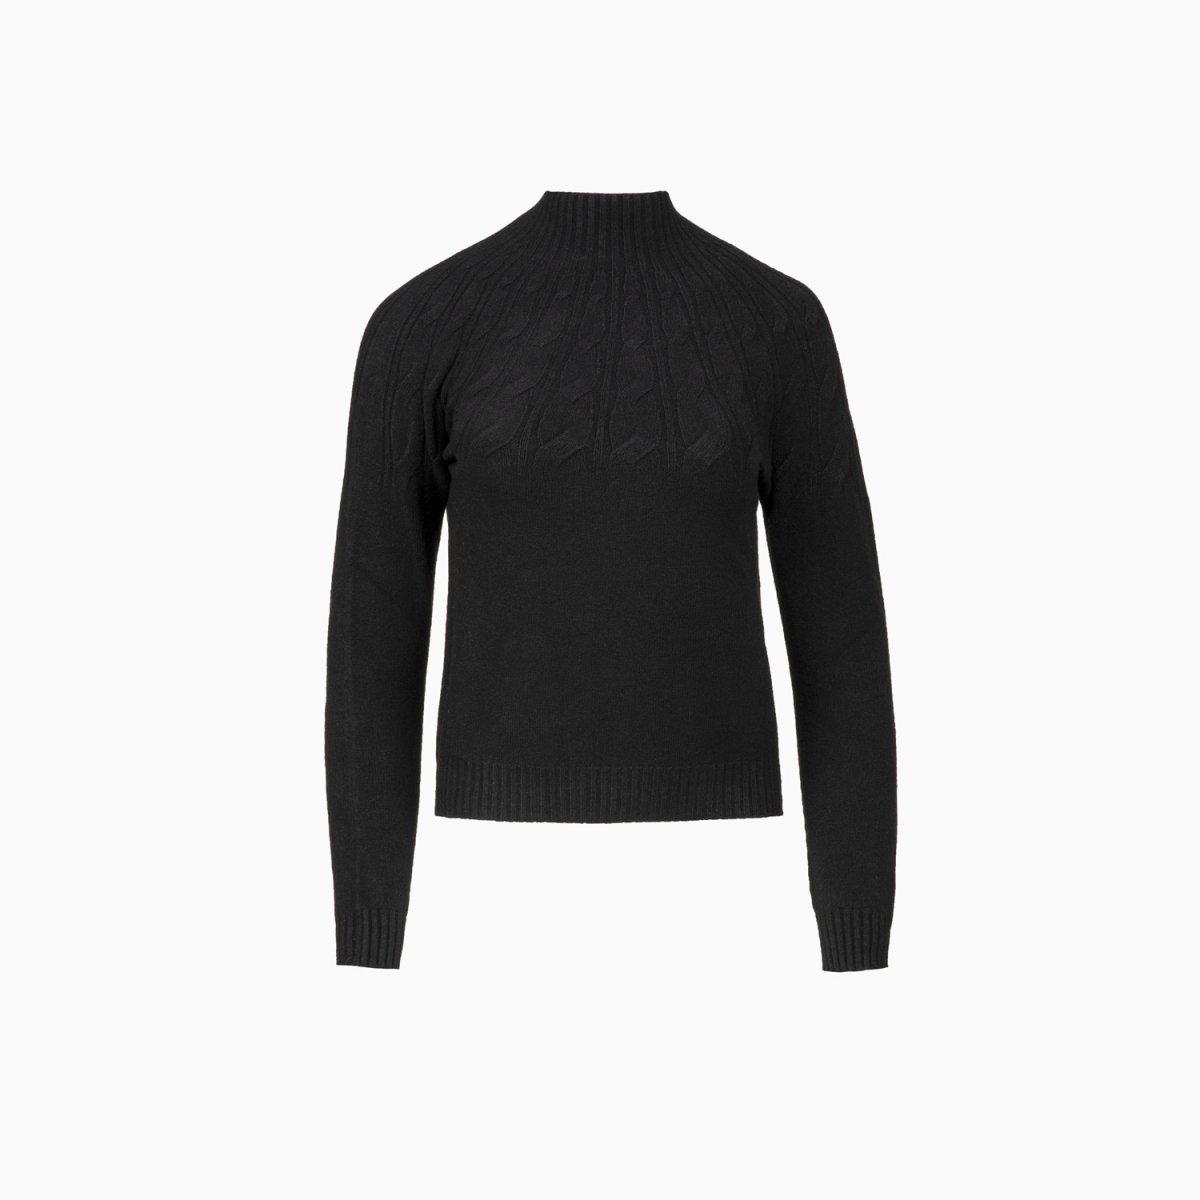 Pullover mit Zopfmuster und Stehkragen in schwarz